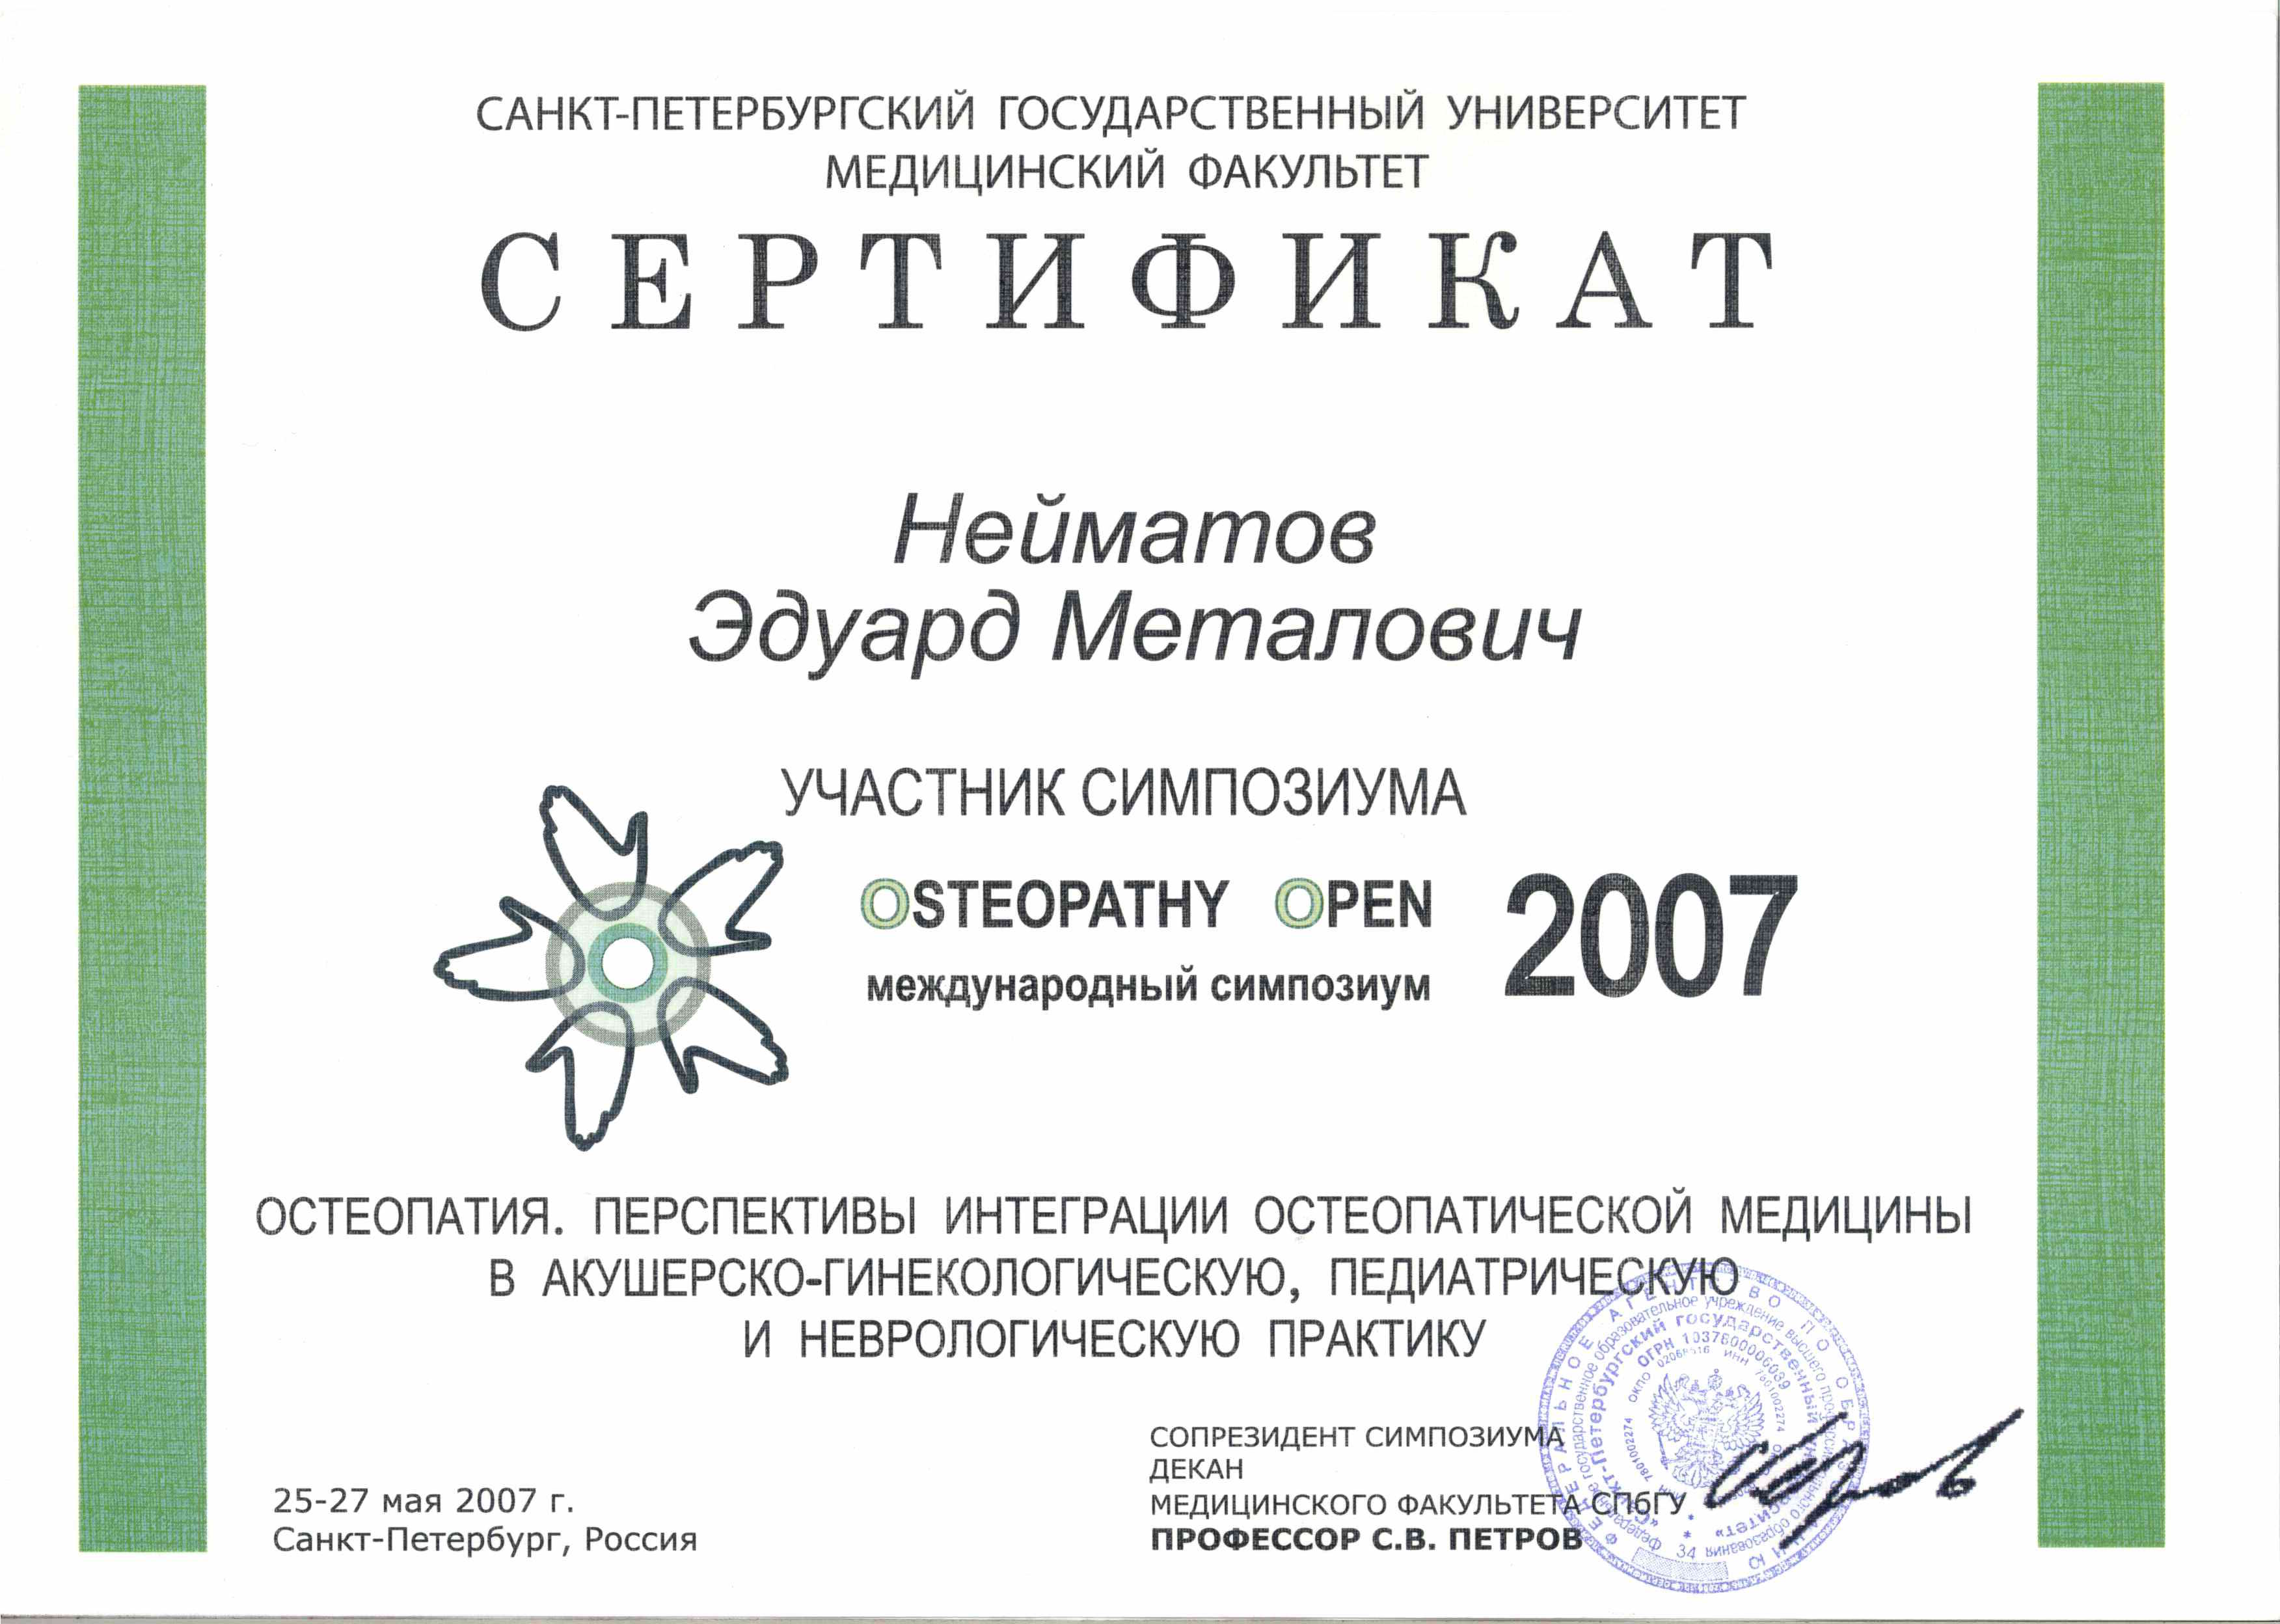 <p>Сертификат - международный симфозиум OSTEOPATHY OPEN</p>